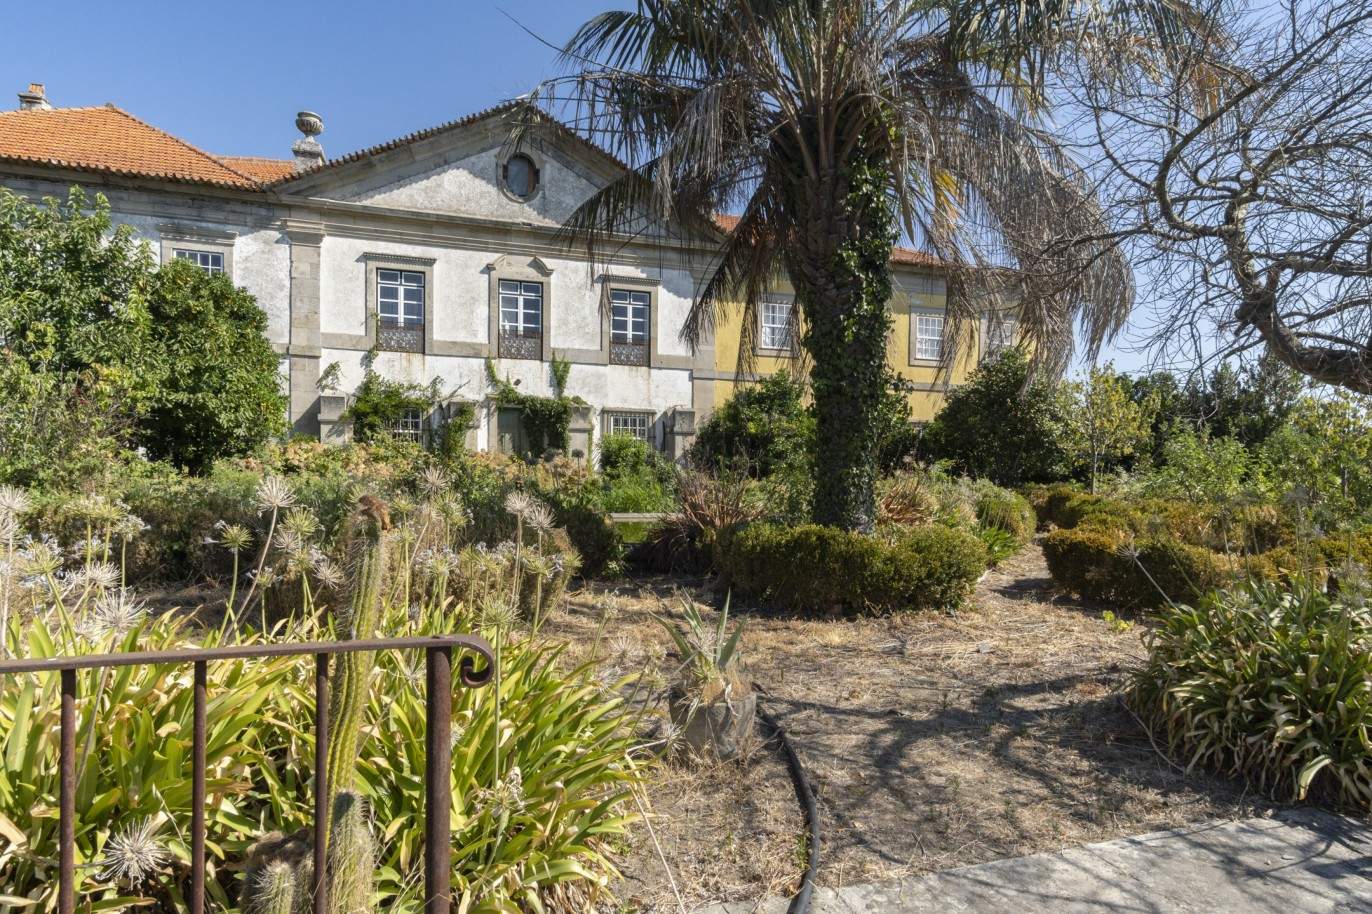 Venta: Palacete para restaurar con jardines y fuente centenaria, en Lamego, región vinícola del Alto Duero, norte de Portugal_207374